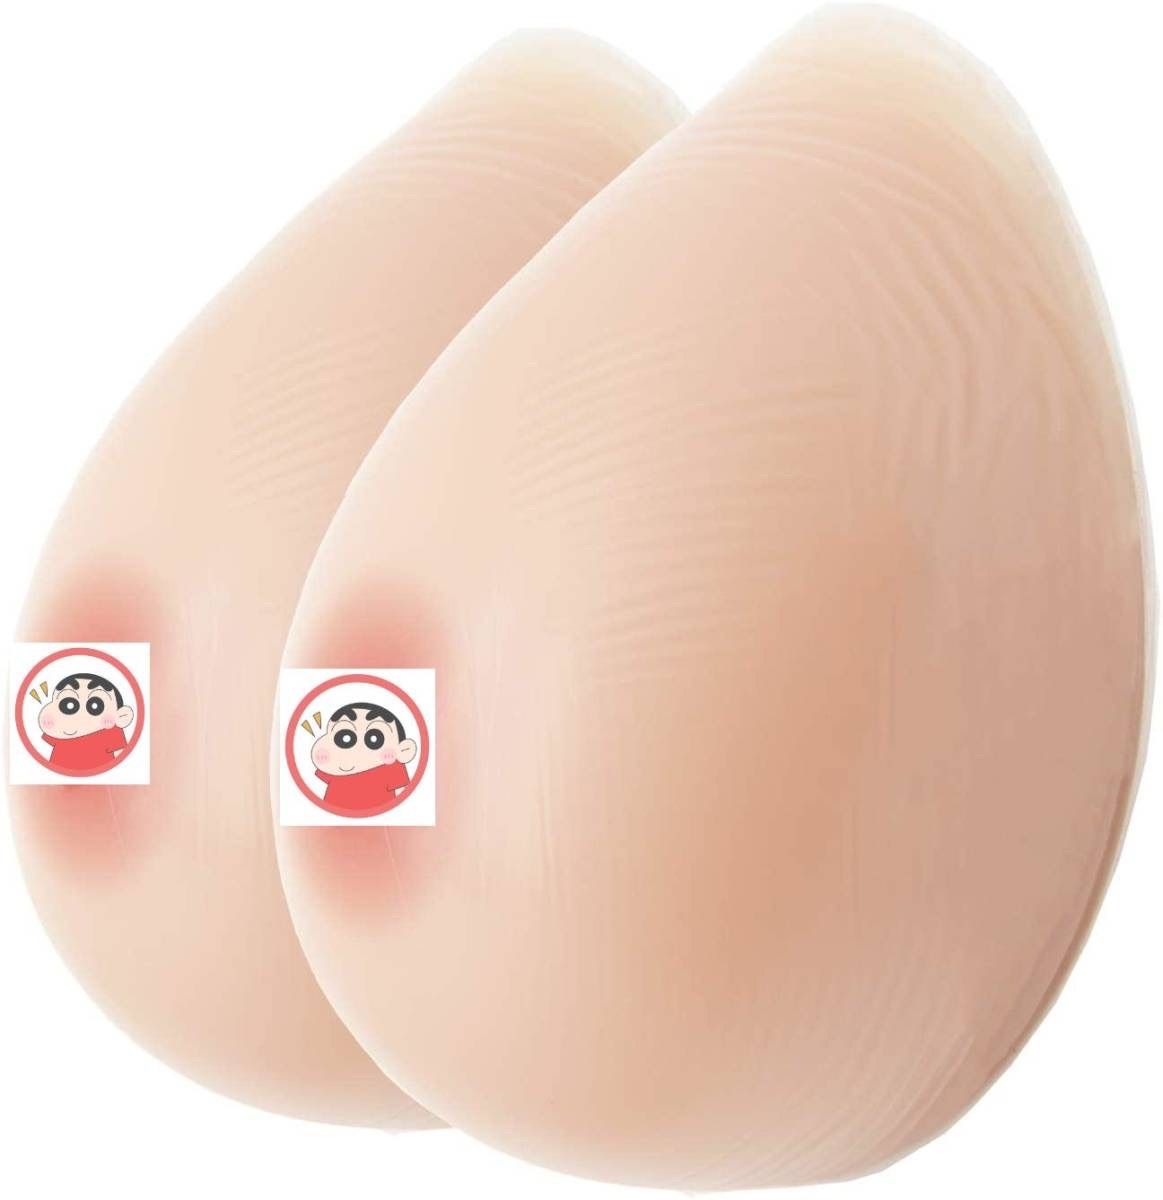 Cカップ 400g*2個)シリコンバスト自然な一体感 粘着 貼付 式 人工乳房